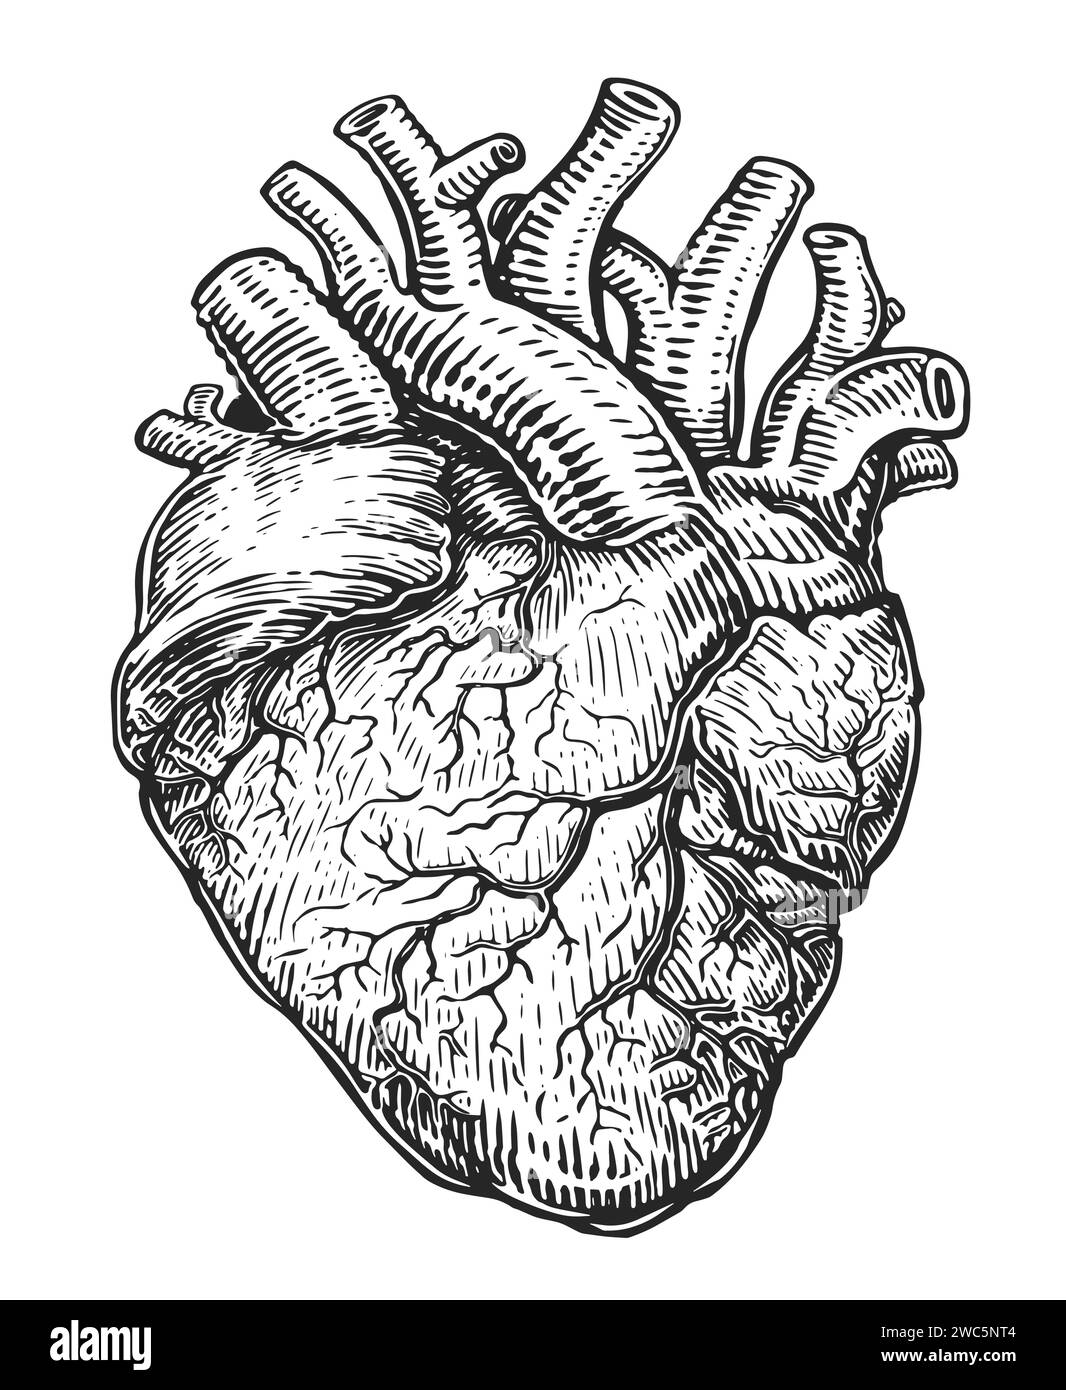 Coeur humain avec des veines, croquis isolé sur fond blanc. Illustration vectorielle dessinée à la main dans le style de gravure vintage Illustration de Vecteur